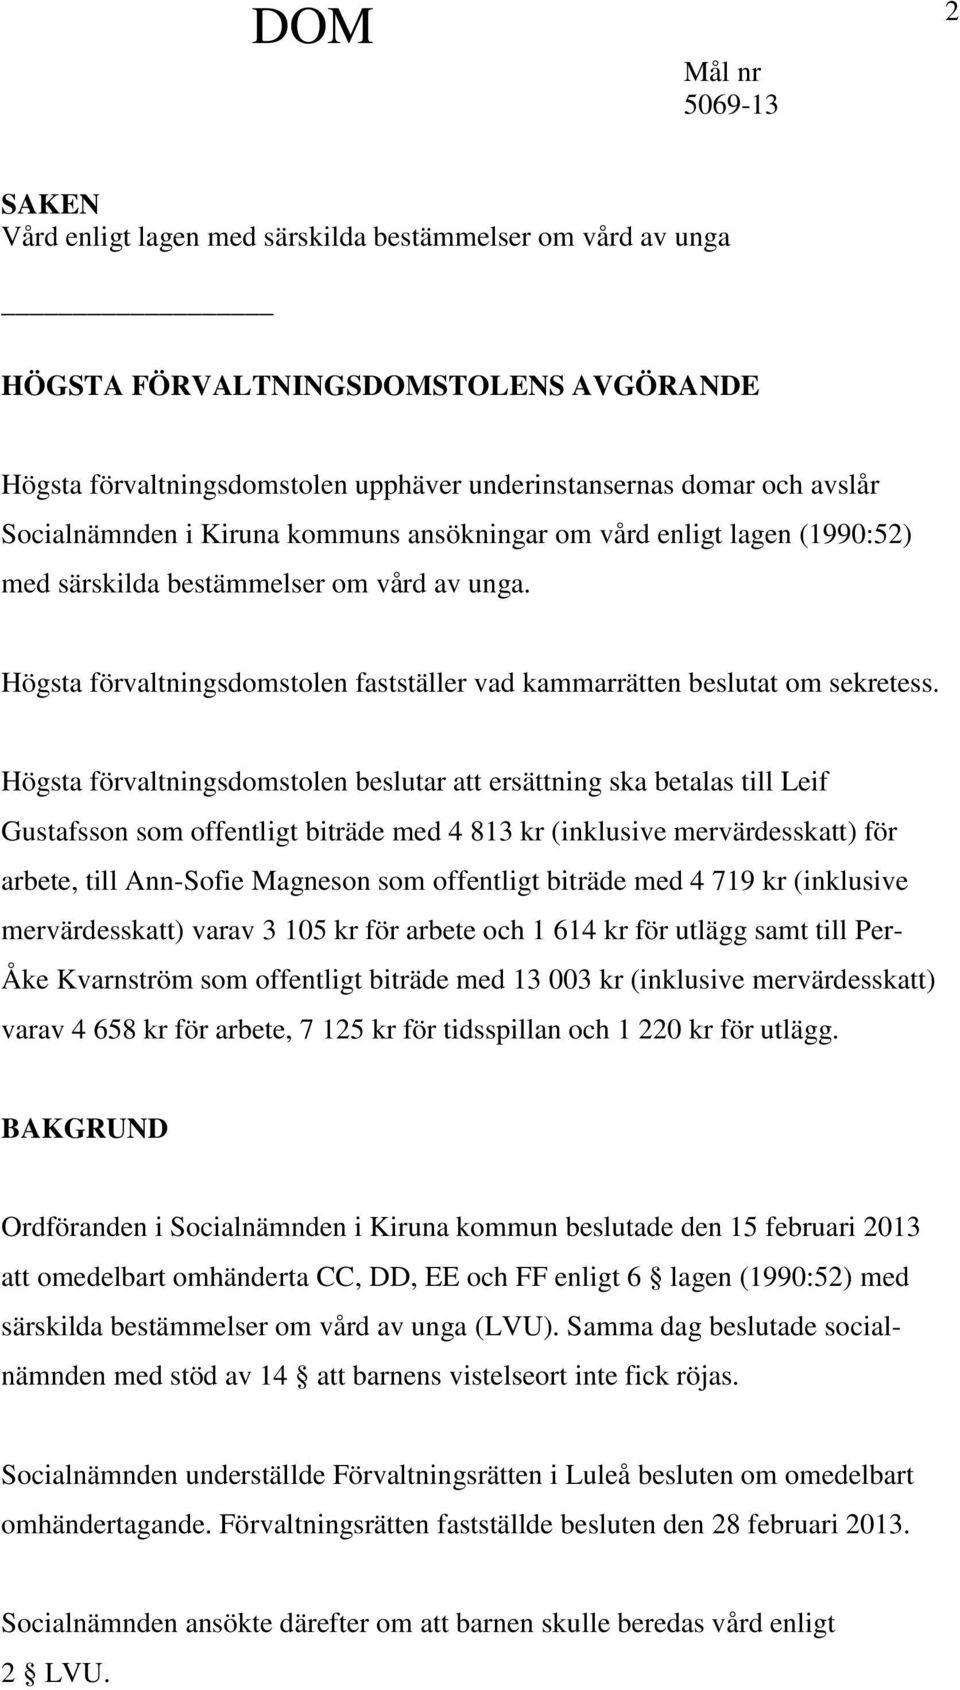 Högsta förvaltningsdomstolen beslutar att ersättning ska betalas till Leif Gustafsson som offentligt biträde med 4 813 kr (inklusive mervärdesskatt) för arbete, till Ann-Sofie Magneson som offentligt